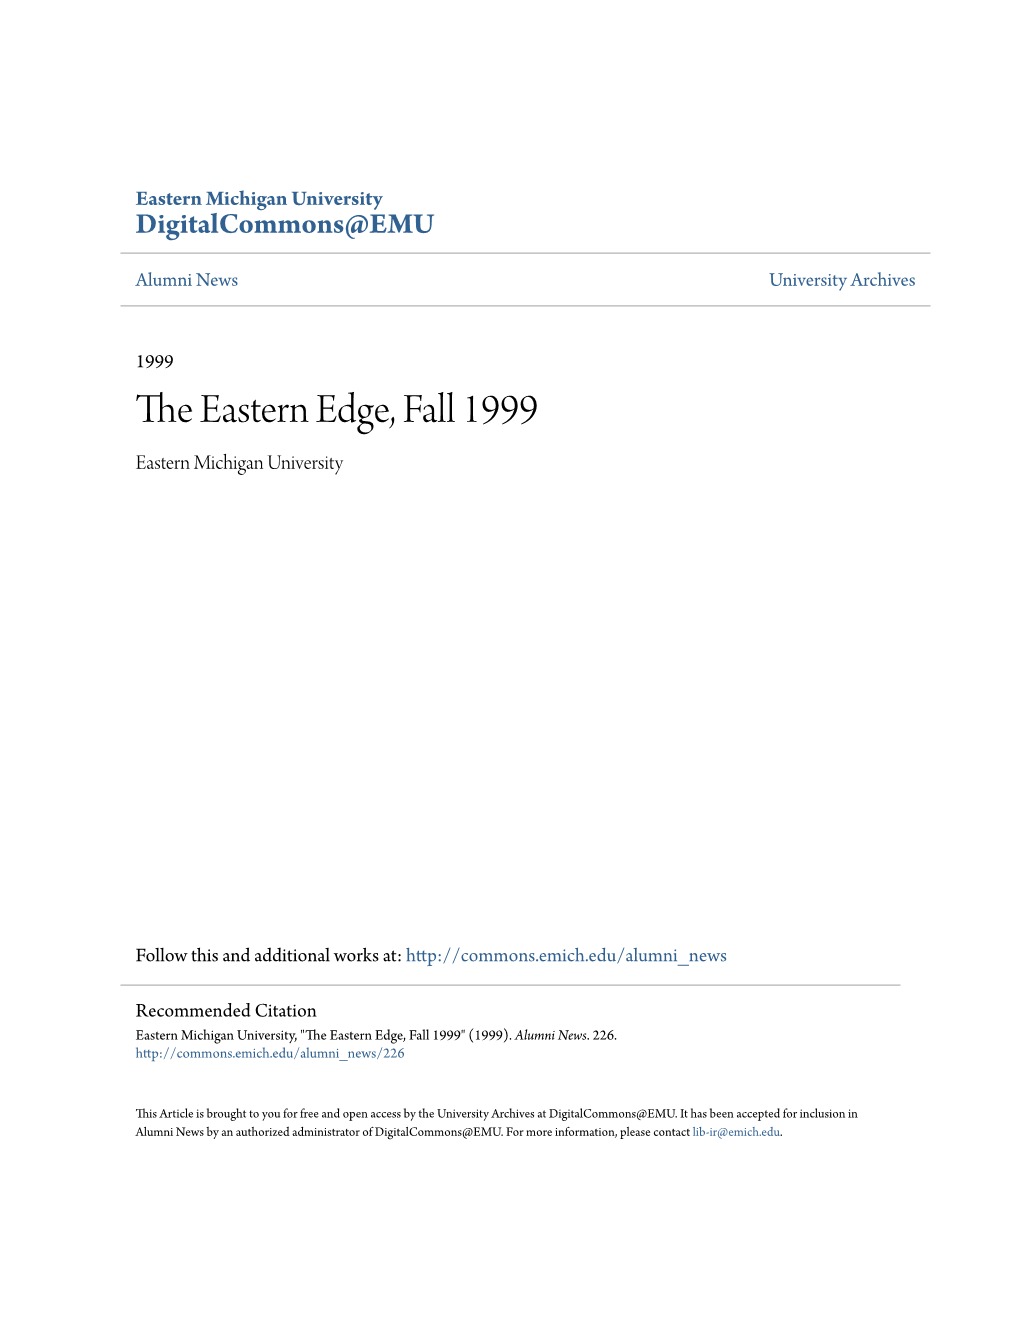 The Eastern Edge, Fall 1999" (1999)